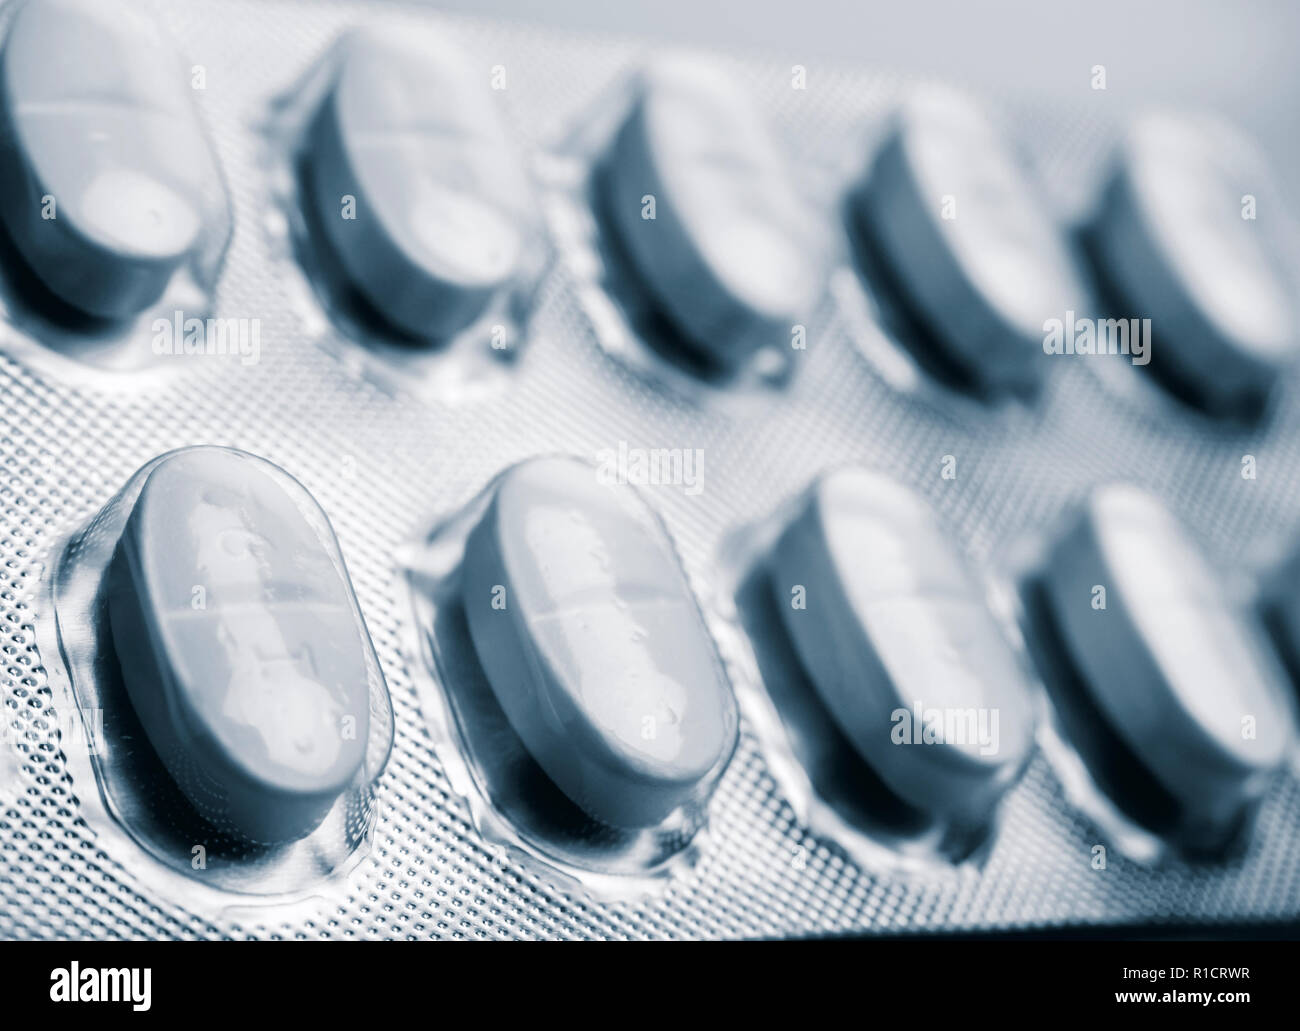 Pilules blanches dans un blister, conceptual image Banque D'Images